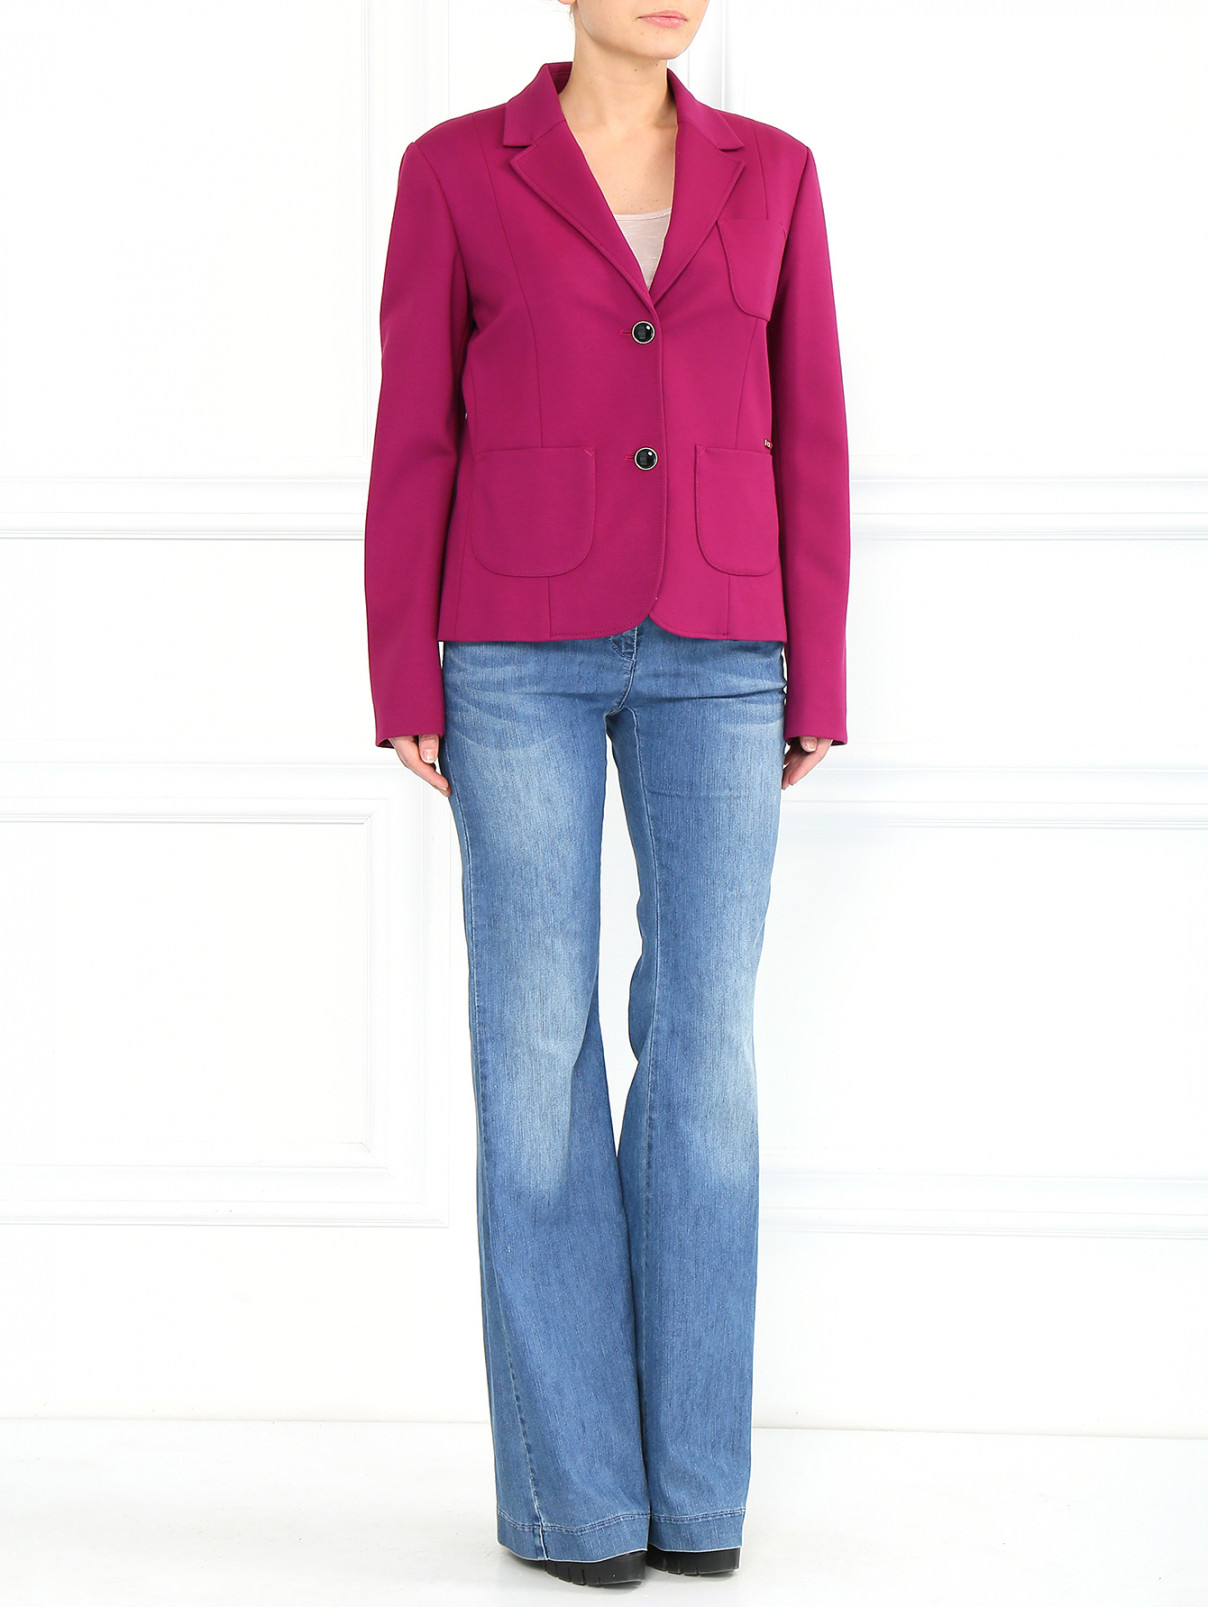 Джинсы-клеш с отделкой на карманах Armani Jeans  –  Модель Общий вид  – Цвет:  Синий